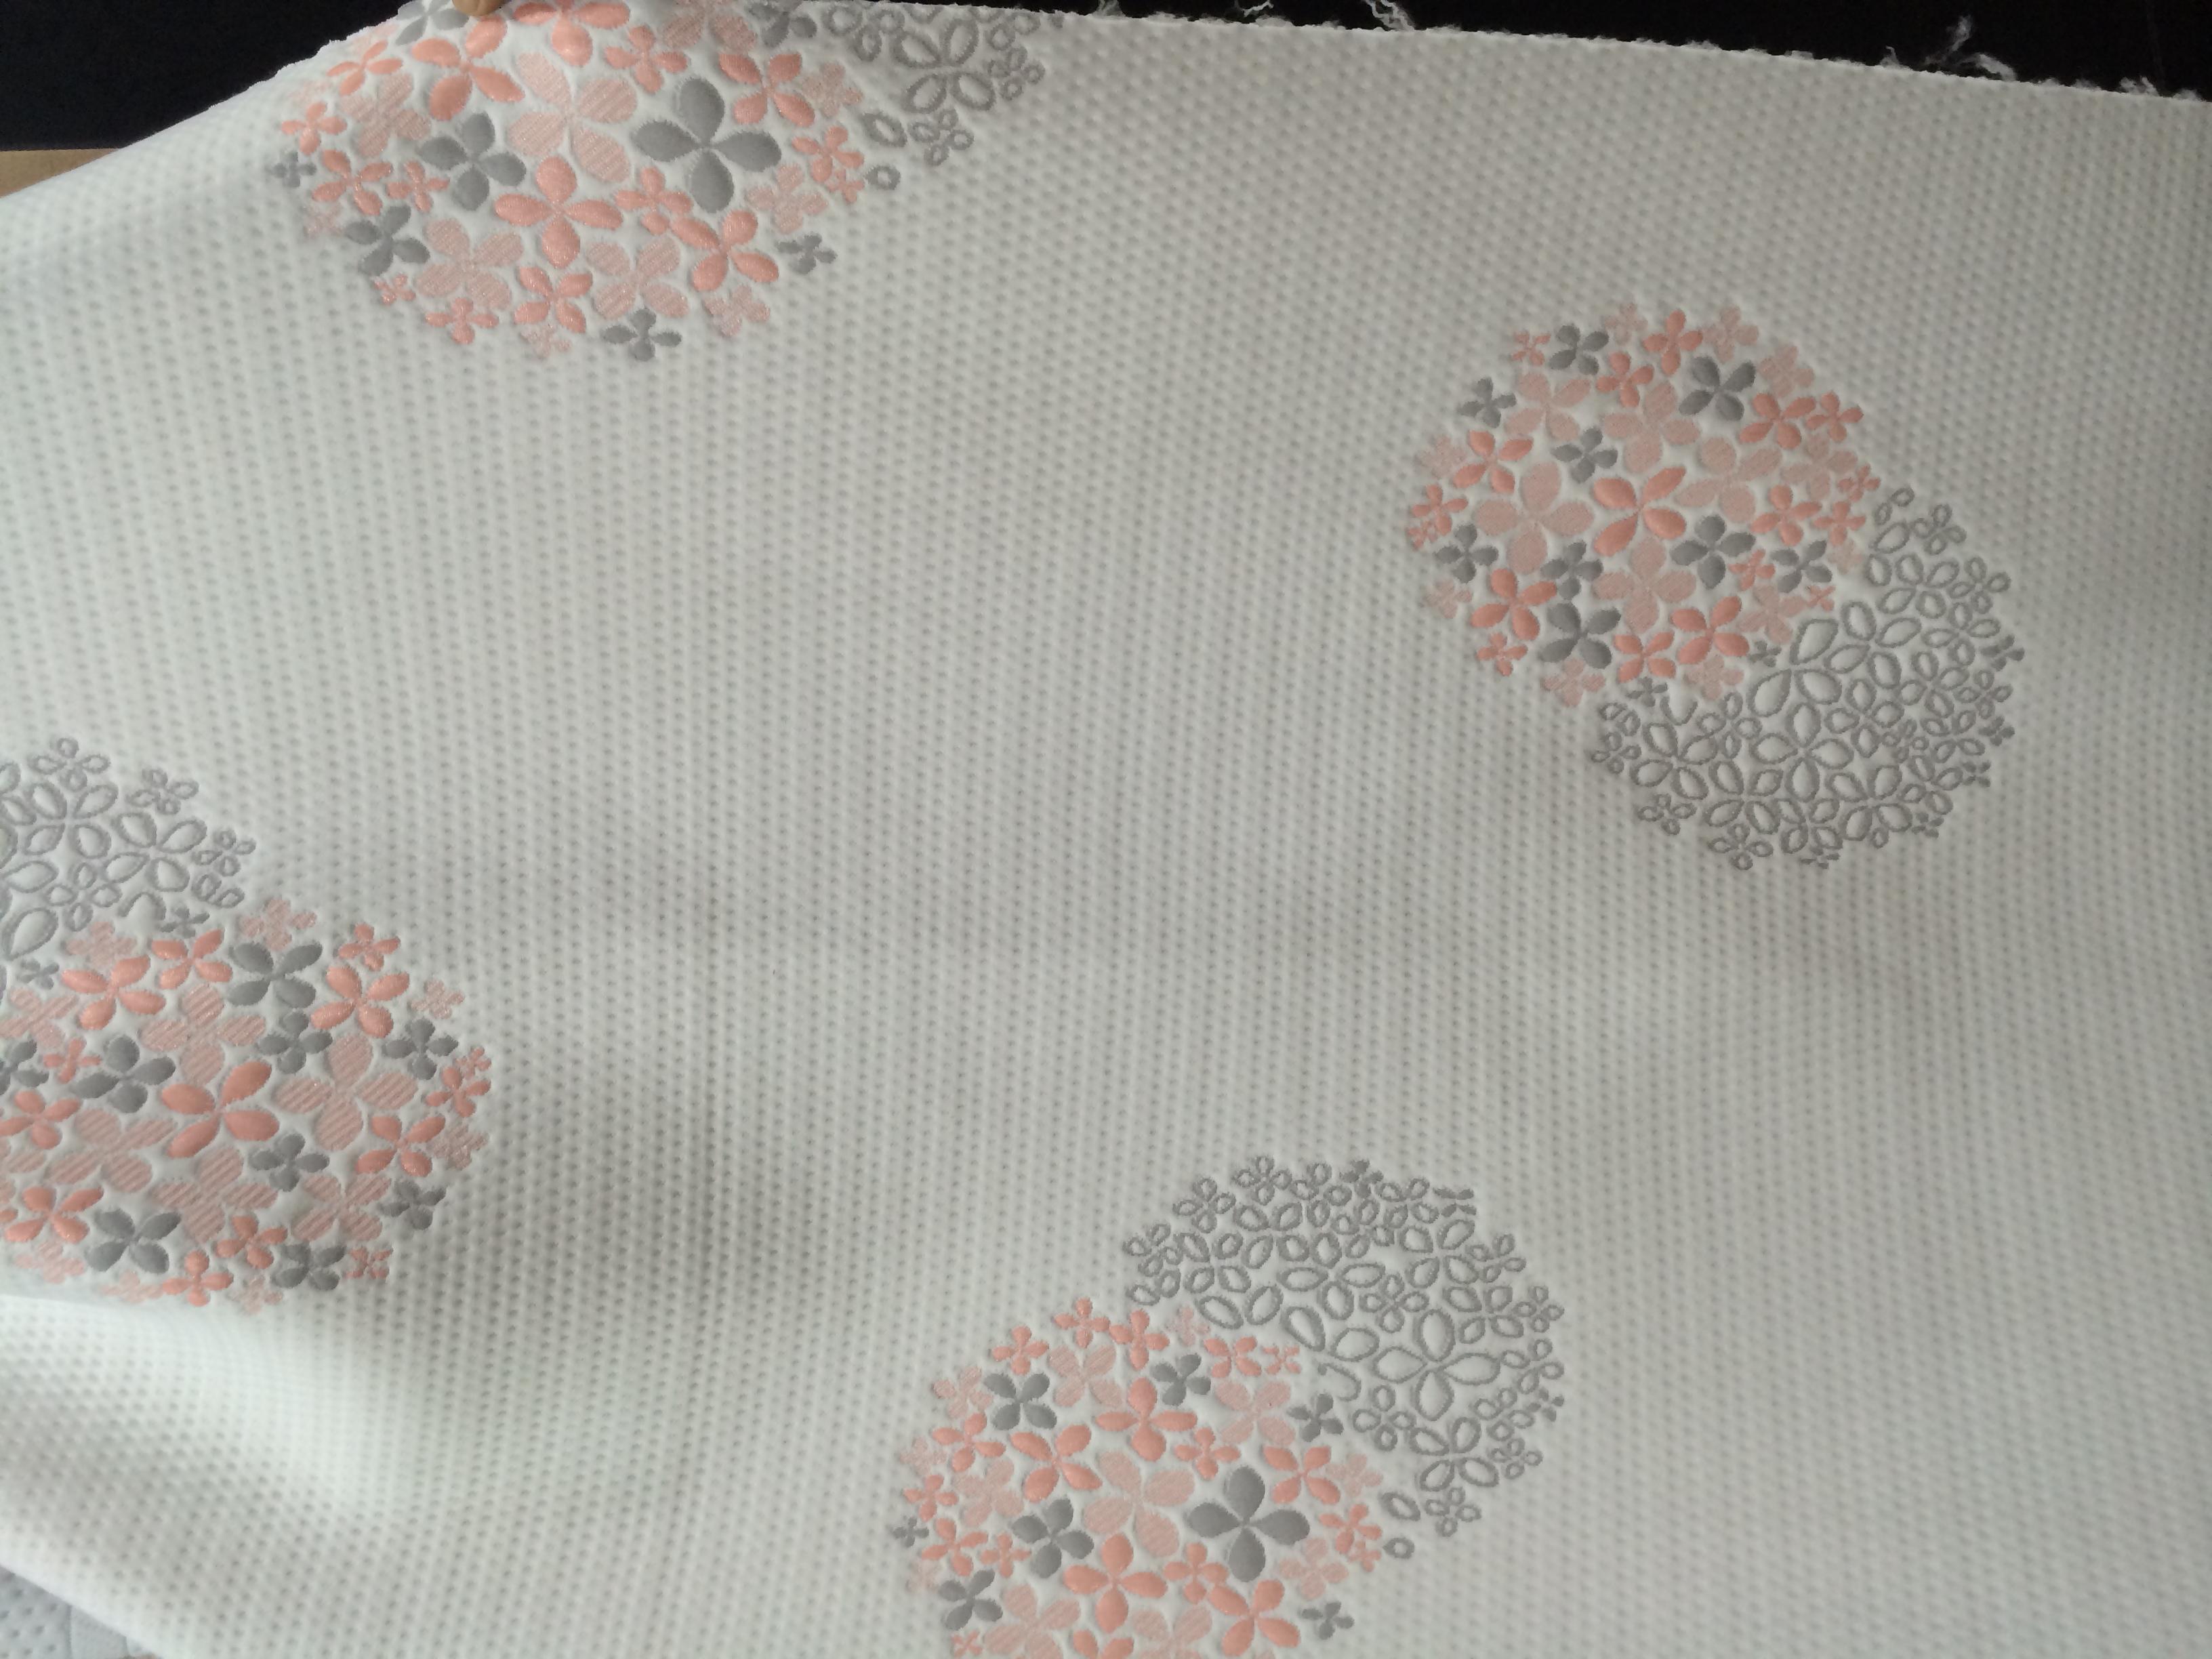 Productor de telas para colchones de algodón de punto elástico